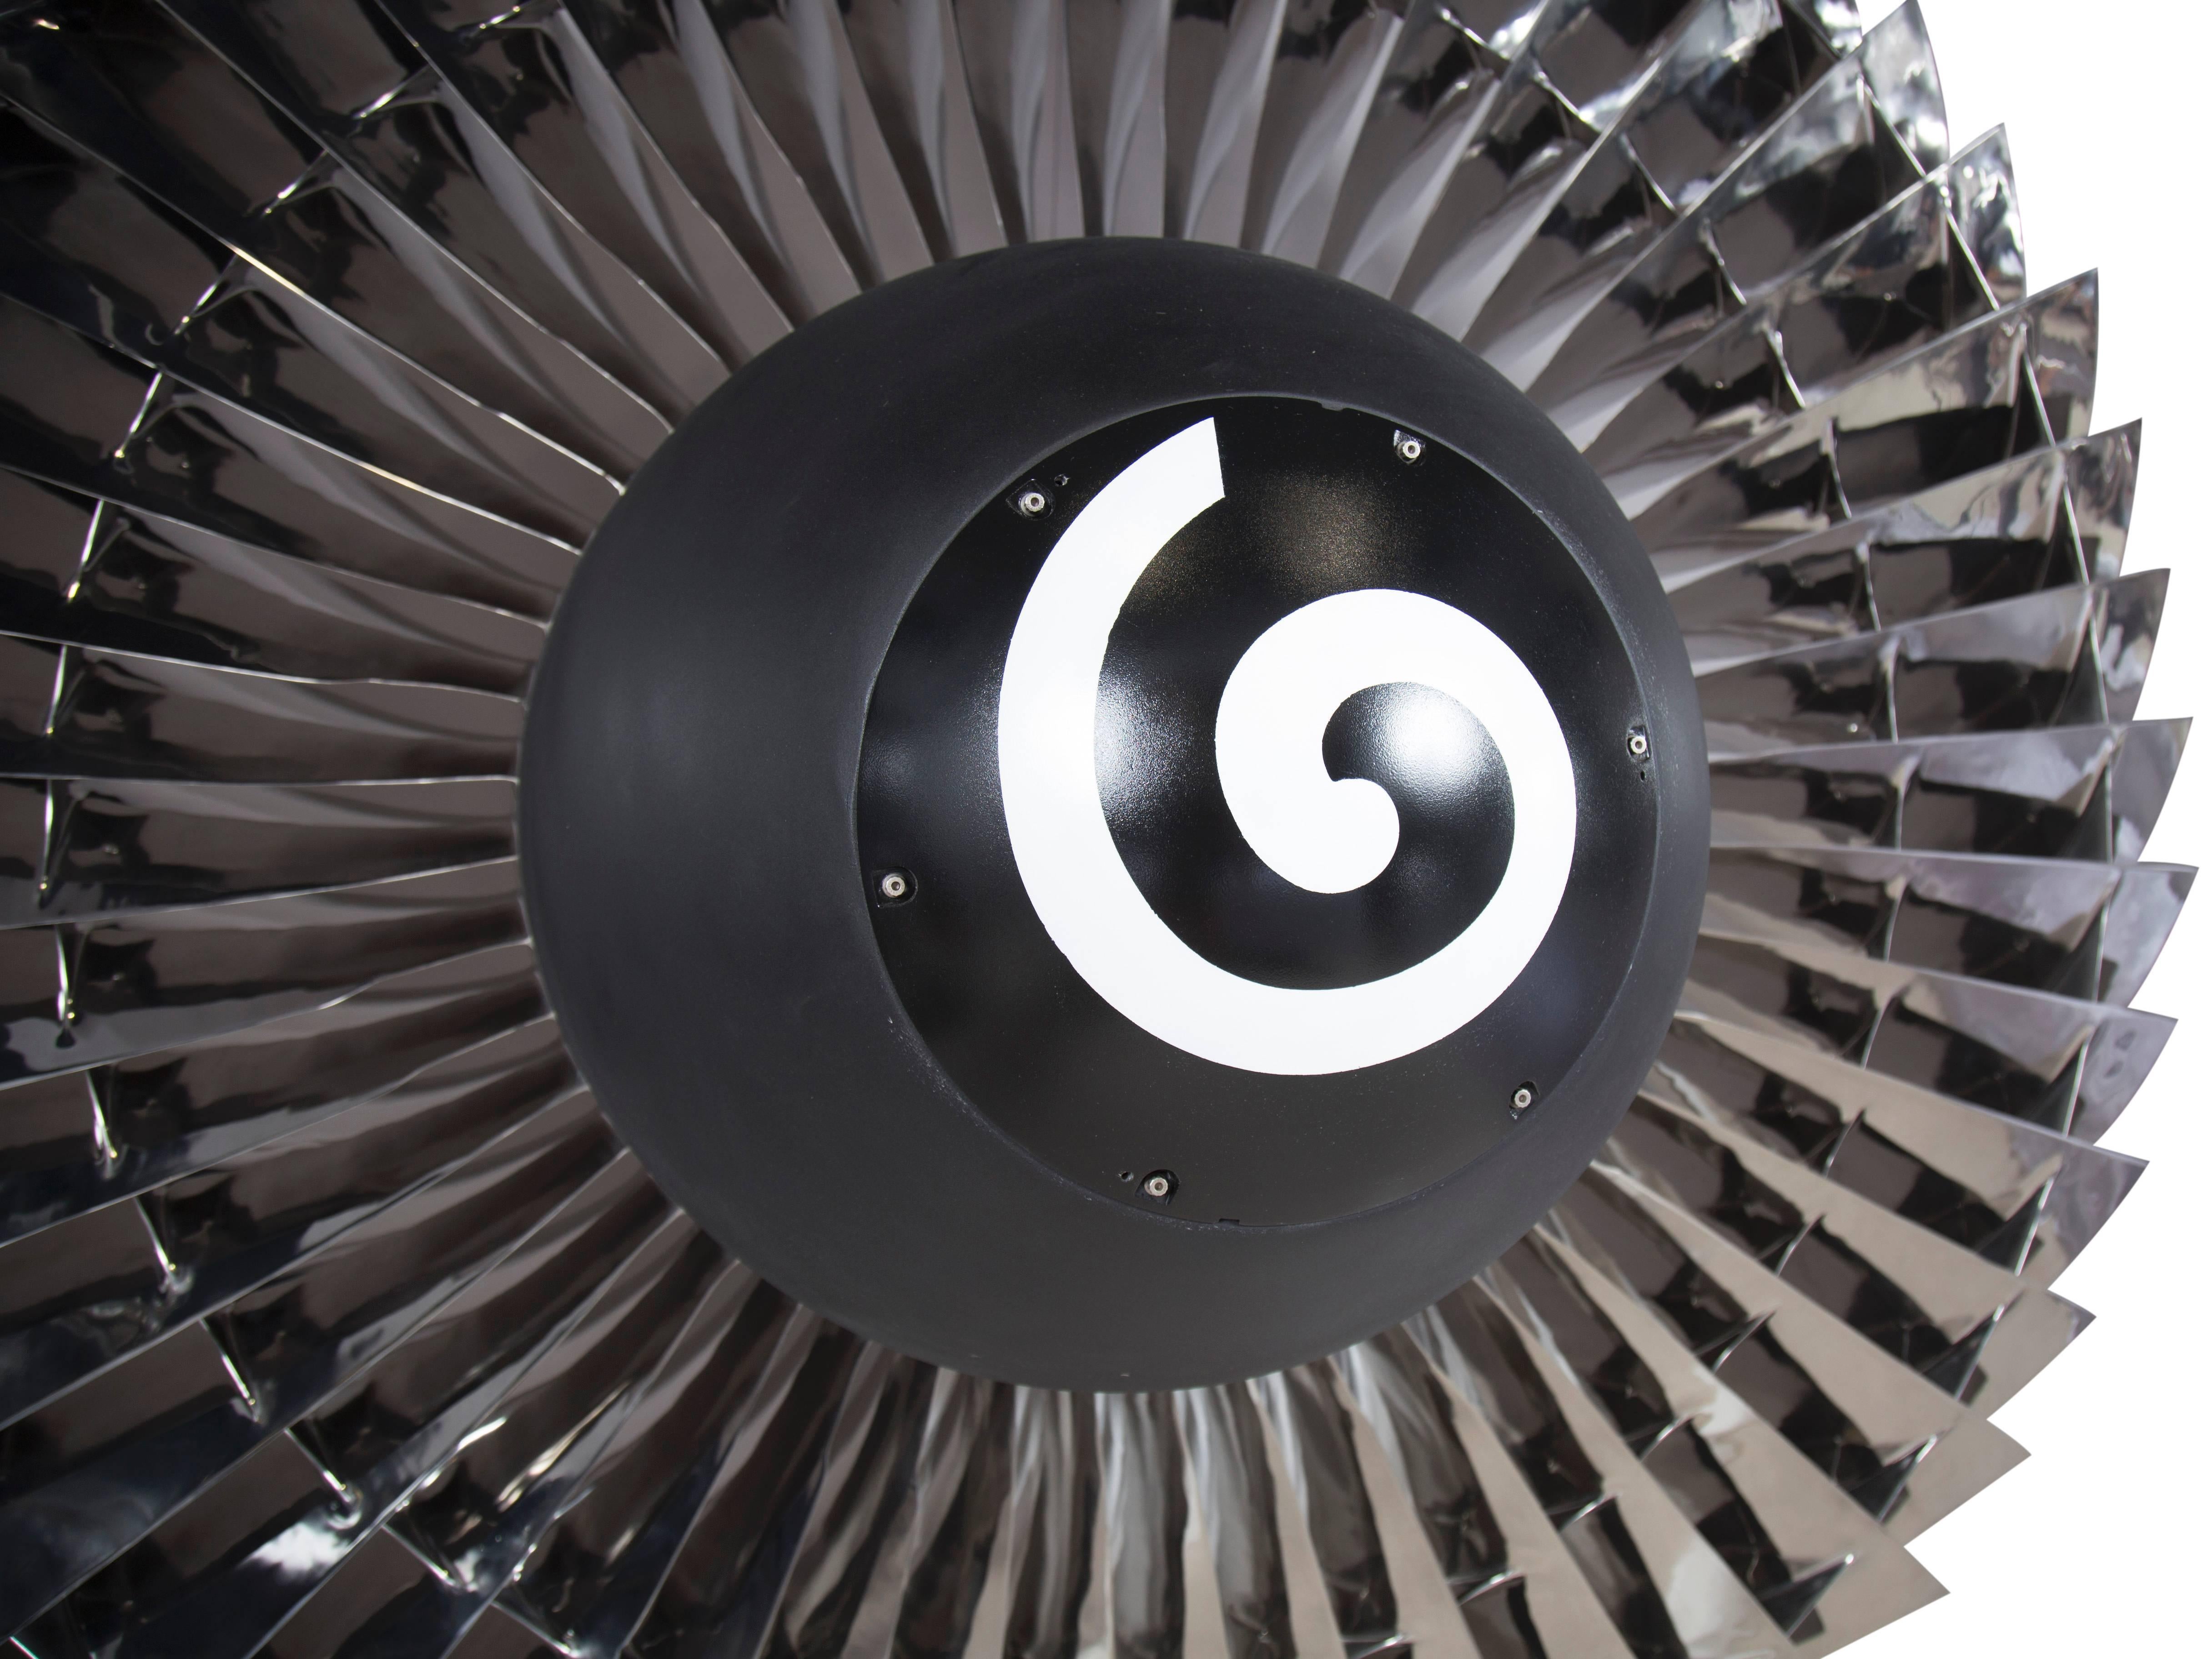 jet engine fan for sale